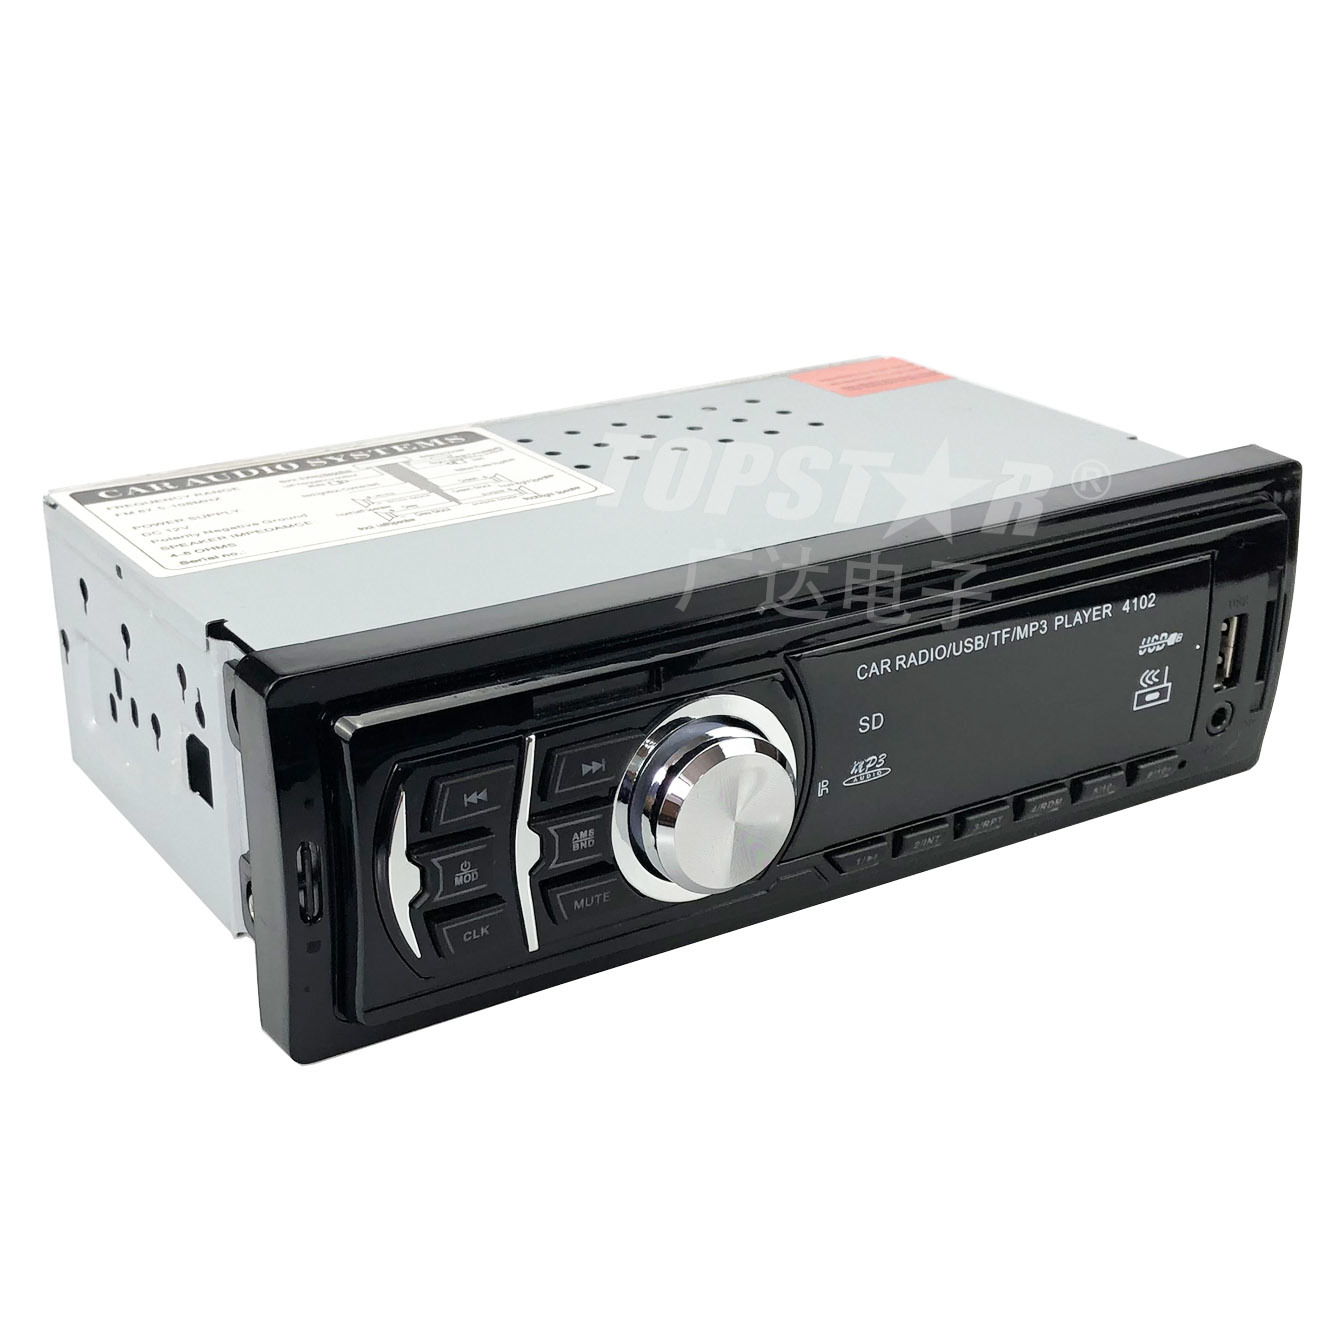 Reprodutor de mp3 para carro, reprodutor de vídeo estéreo para carro, painel fixo, receptor de mídia digital de áudio mp3